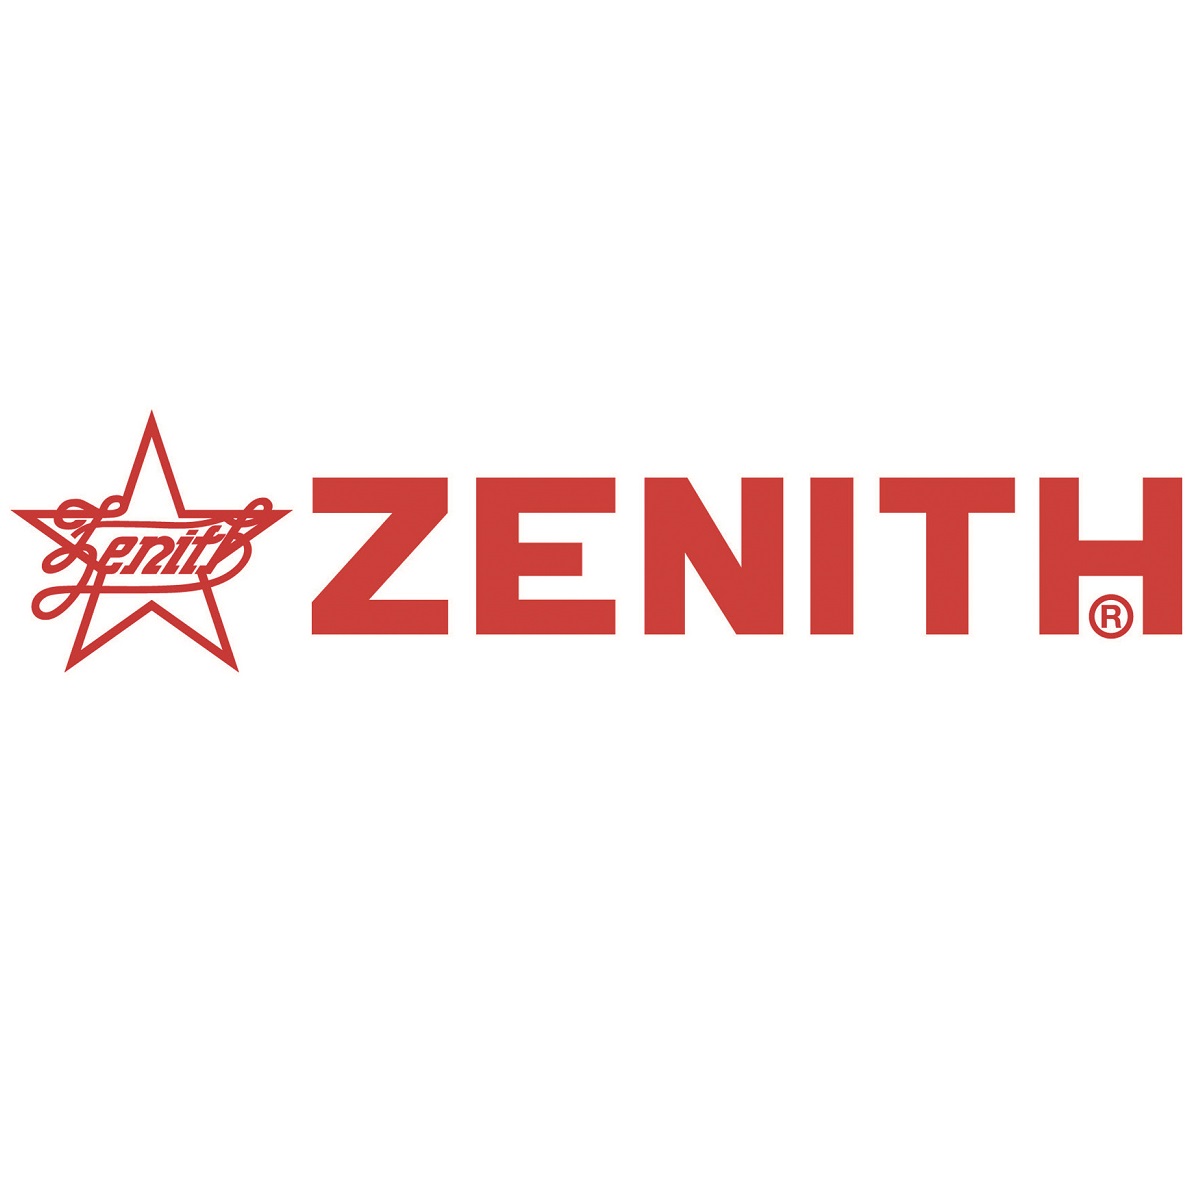 Zenith As Seen In The Block